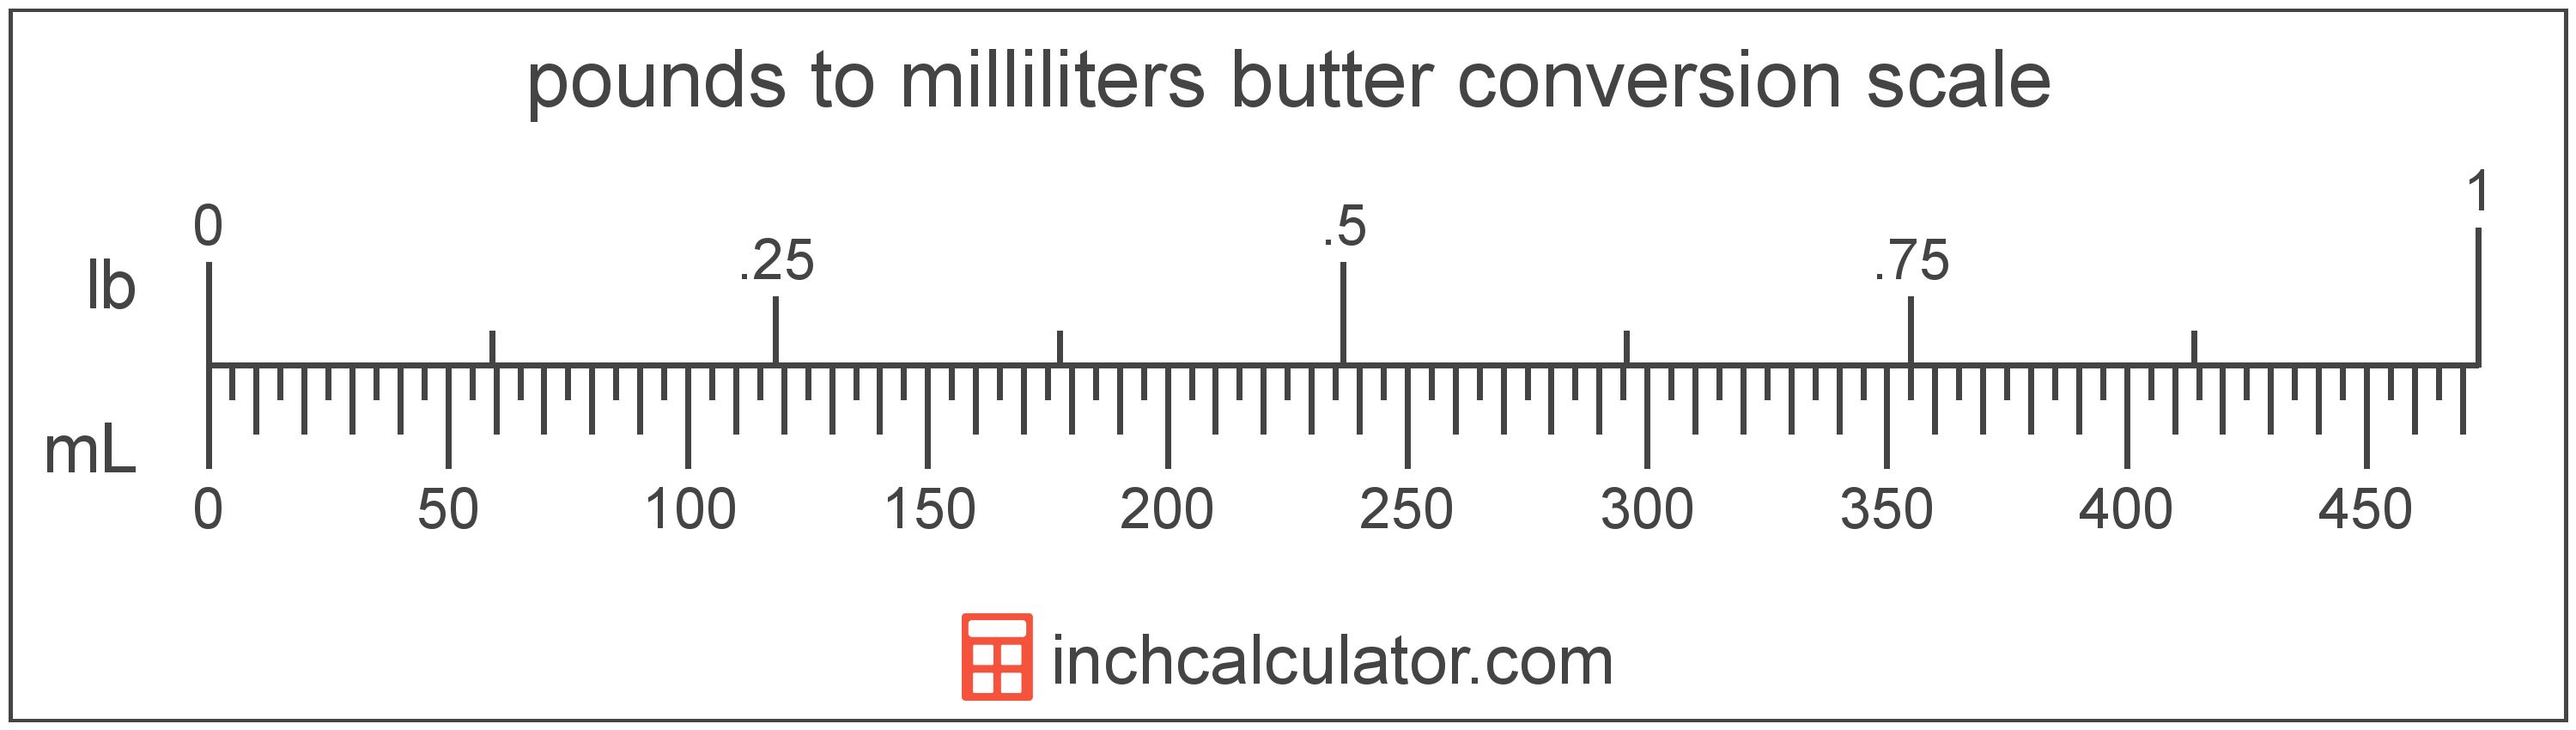 Stick Butter Conversion Chart